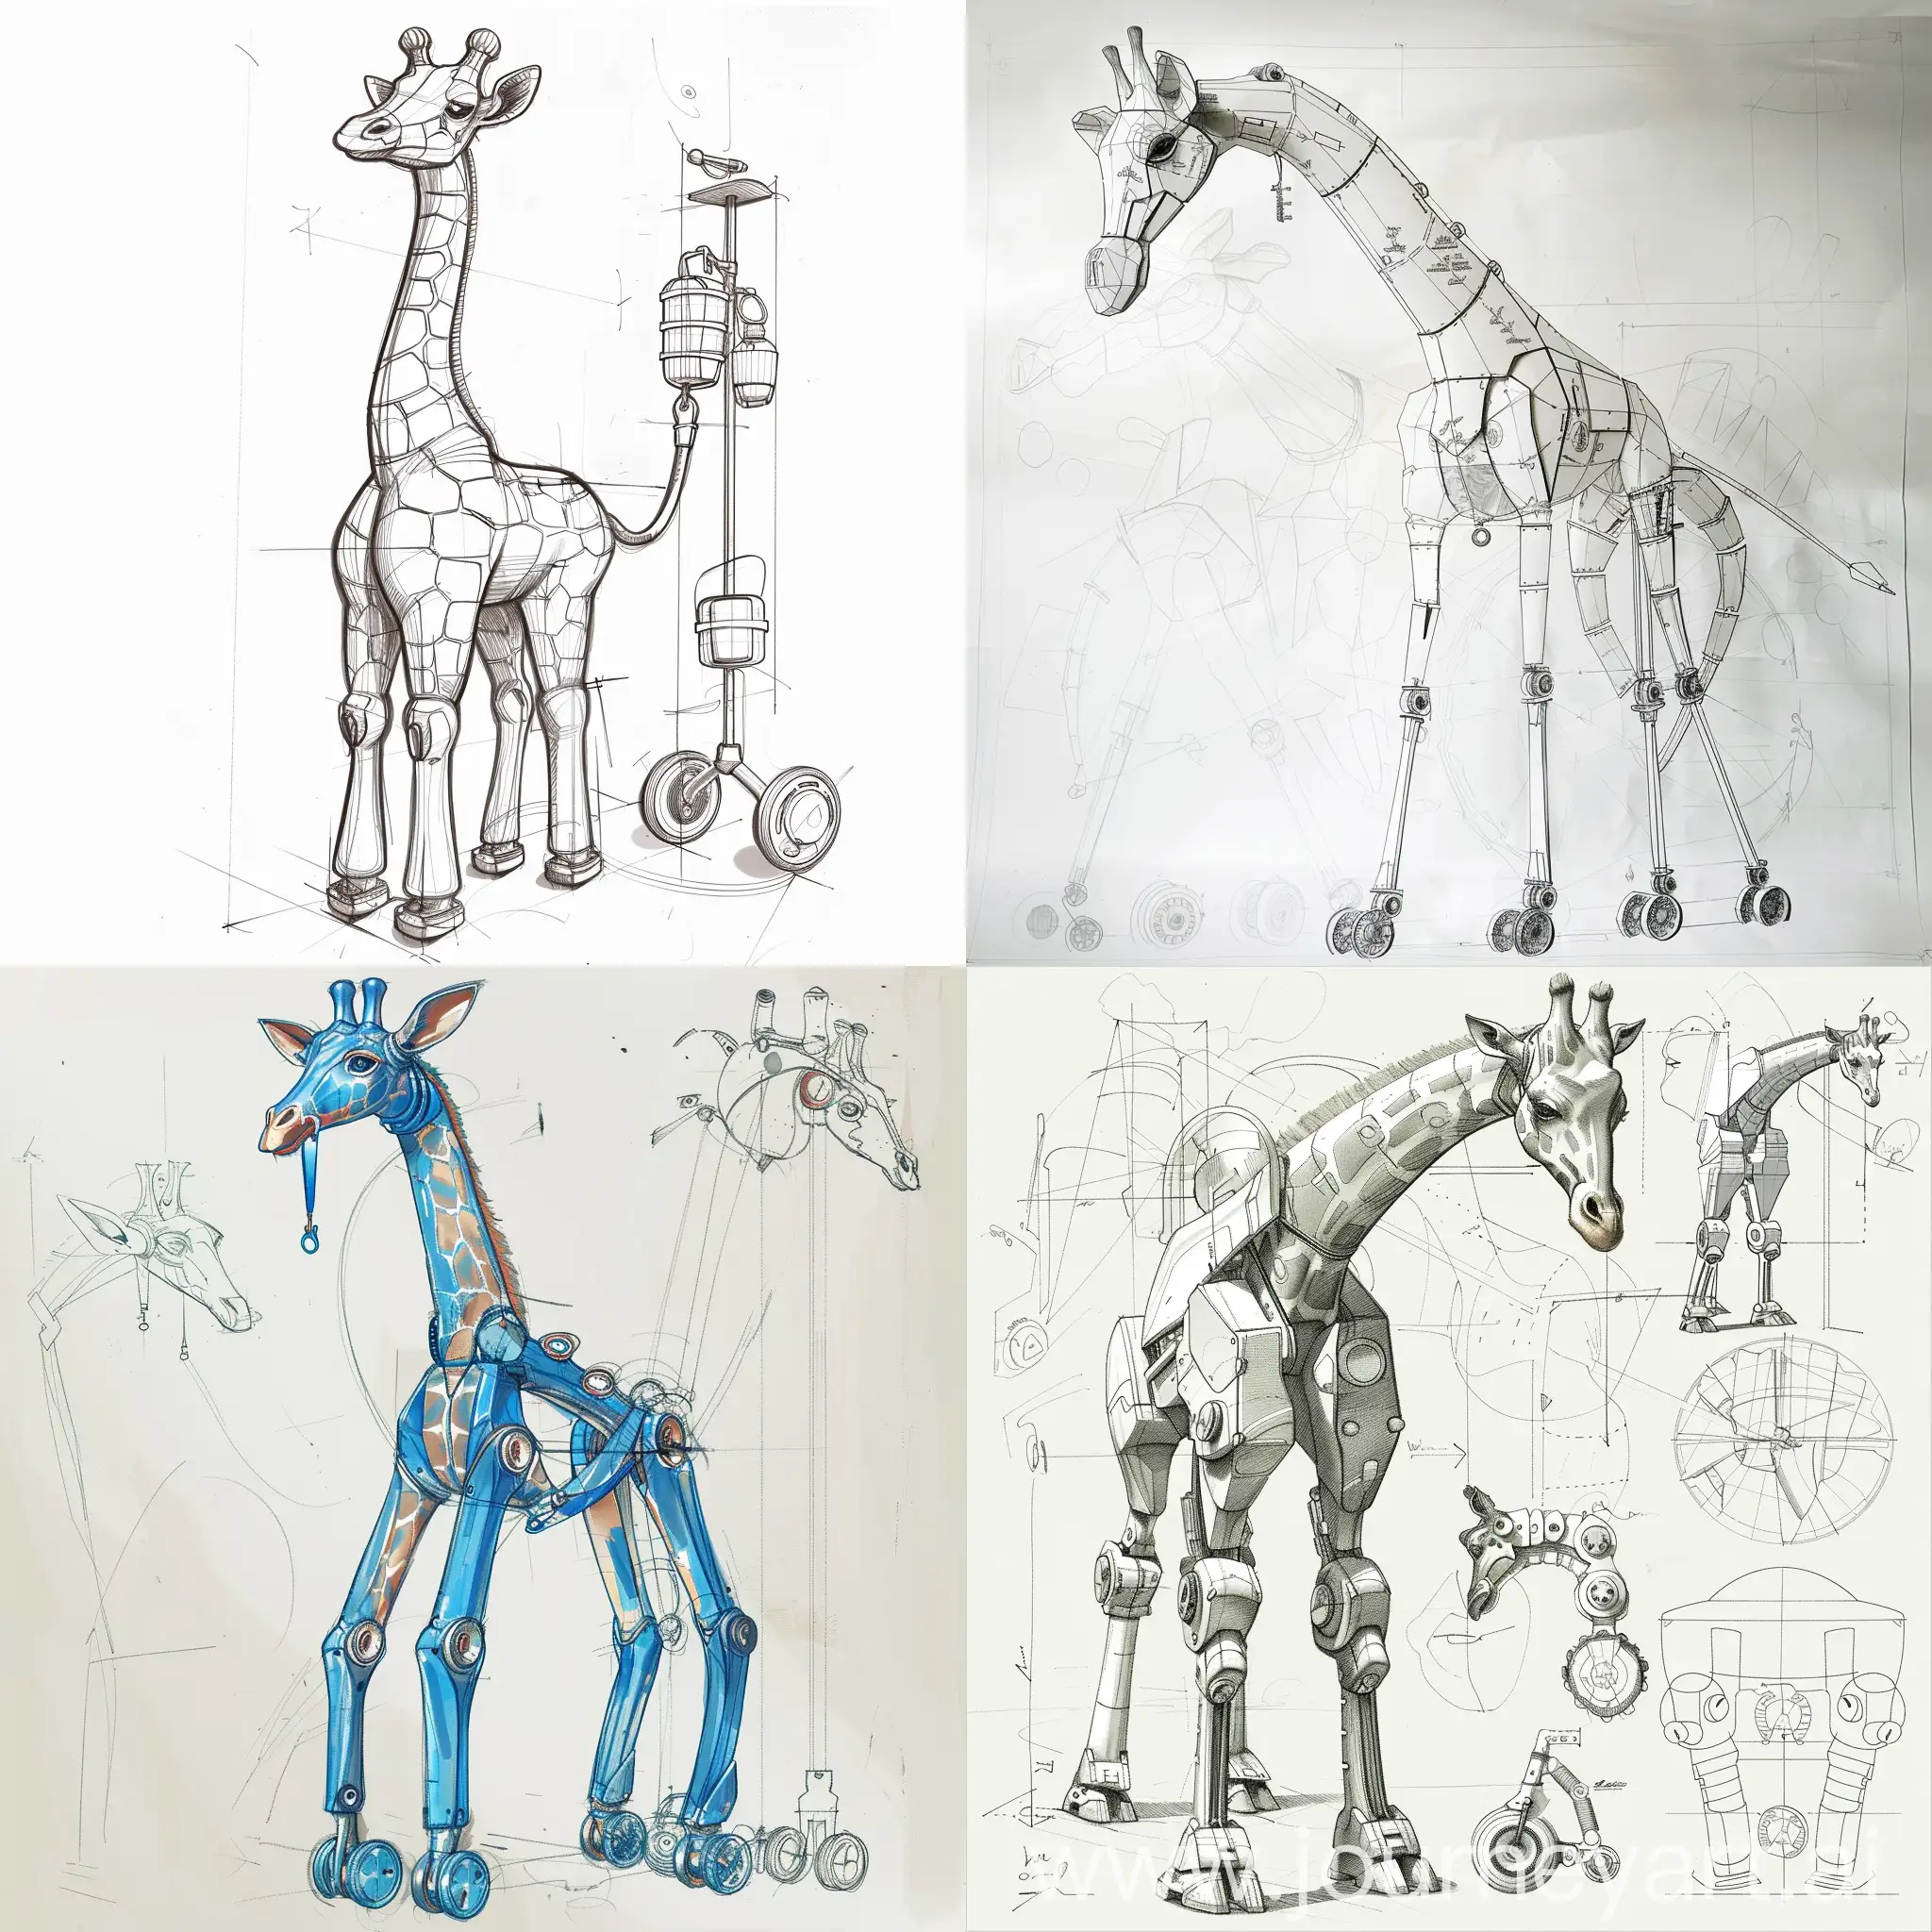 Bionic-GiraffeShaped-Saltwater-Hanging-Rod-Design-Sketch